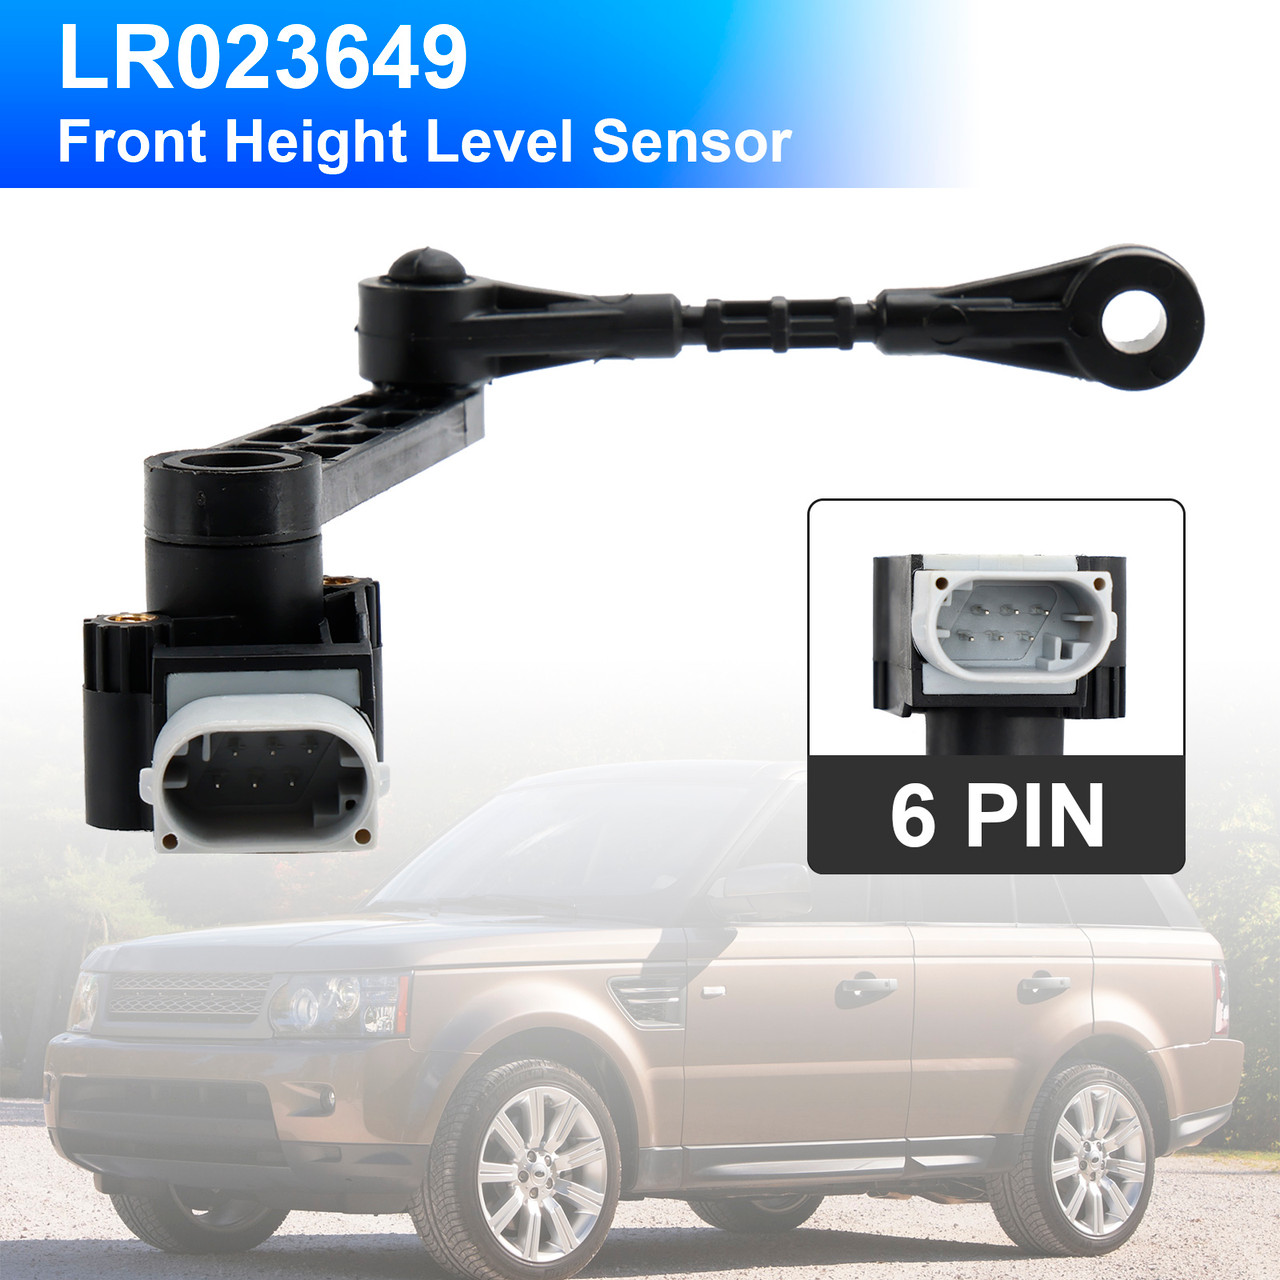 Front Left/Right Height Level Sensor LR023649 For Range Rover Sport 2010-2013